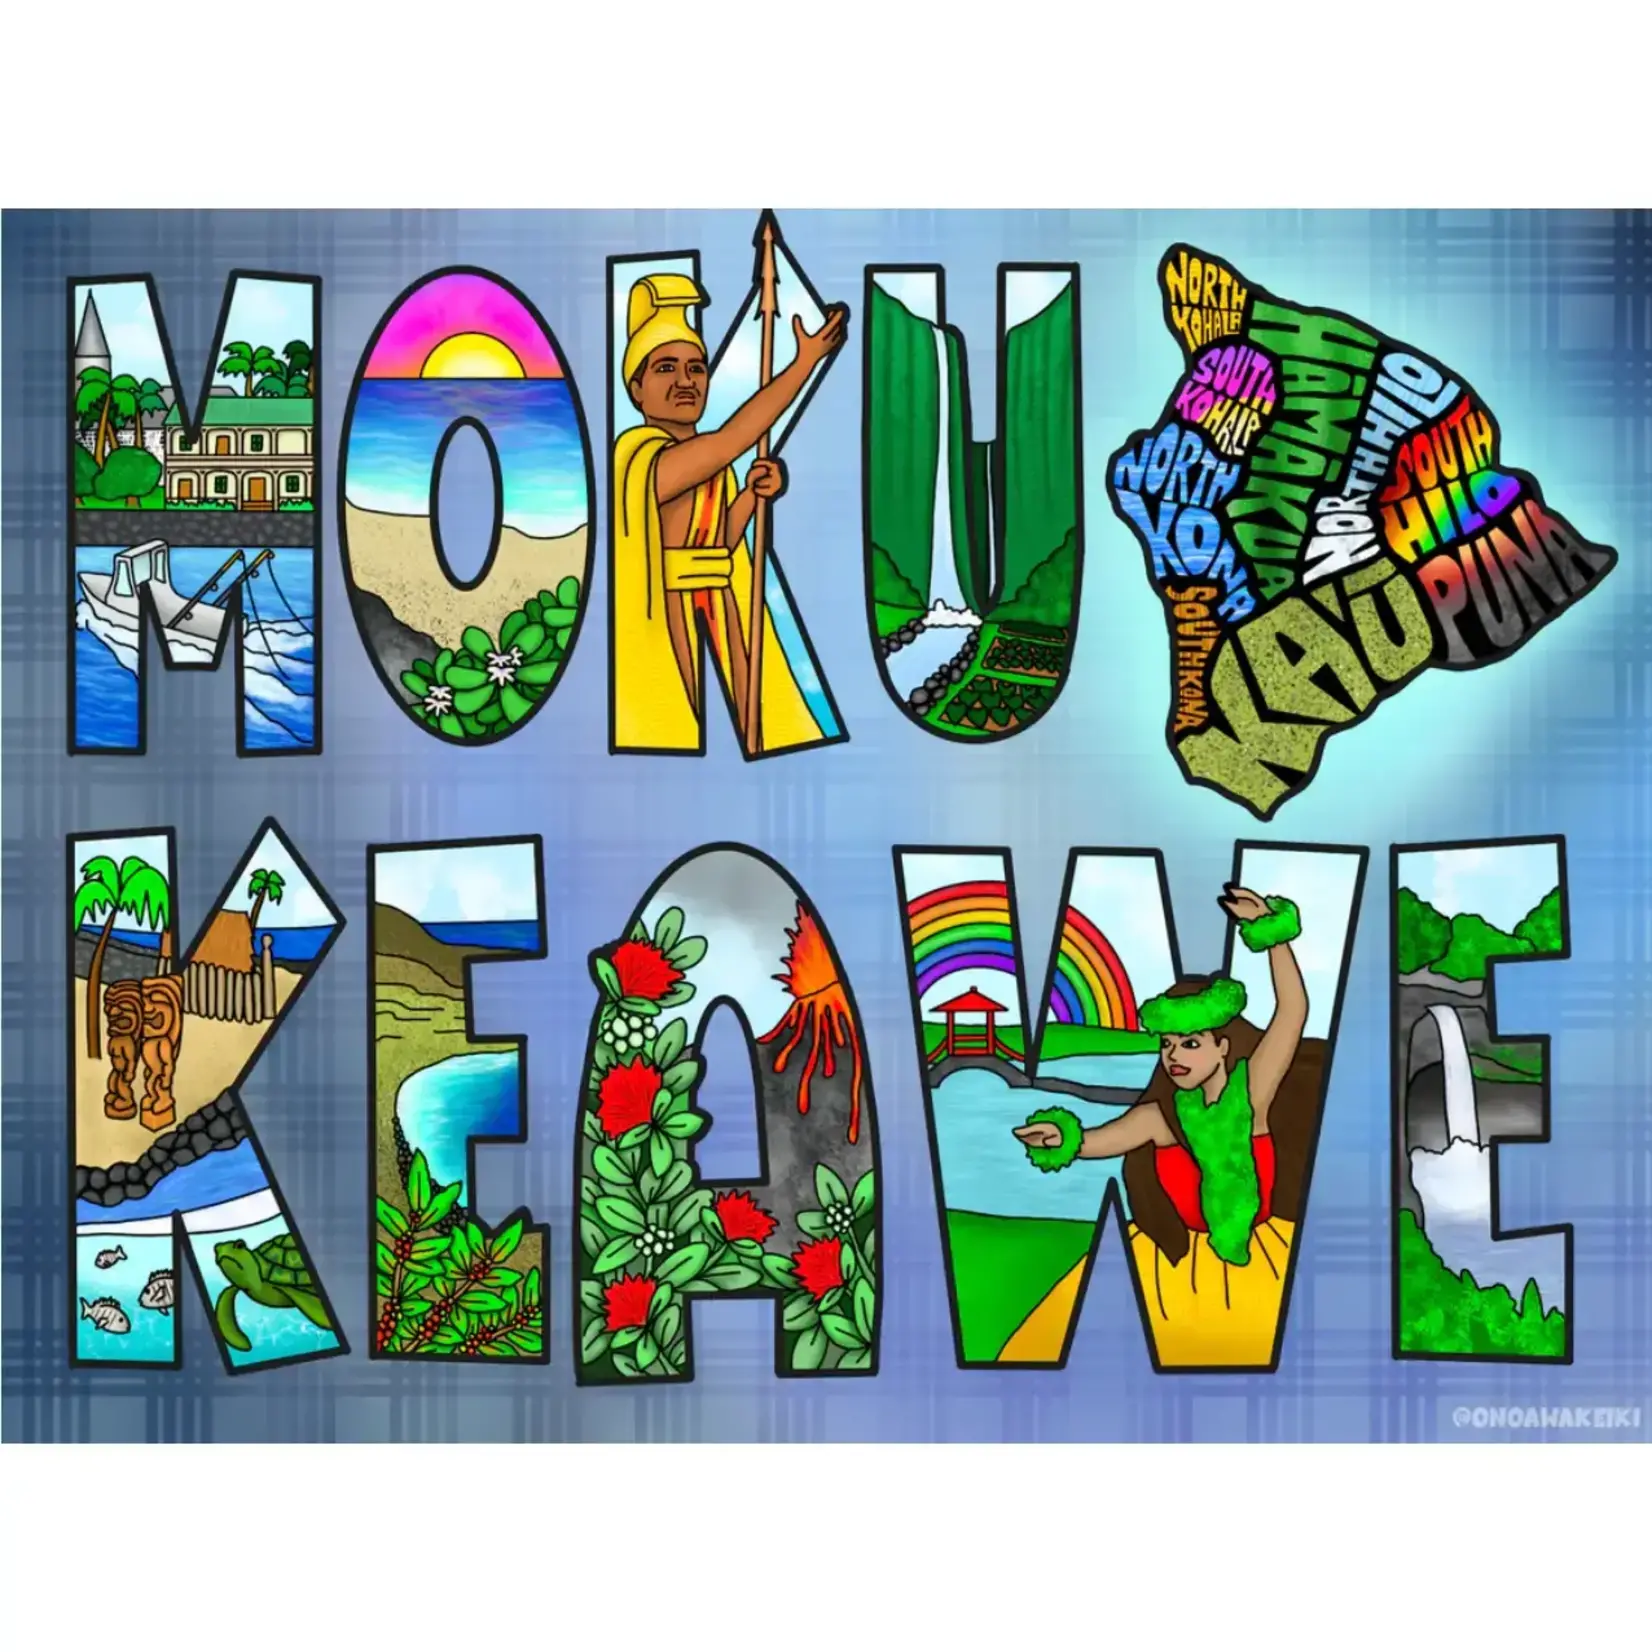 Surf Shack Puzzles Surf Shack Puzzles: Moku o Keawe by Ono + Awa Keiki